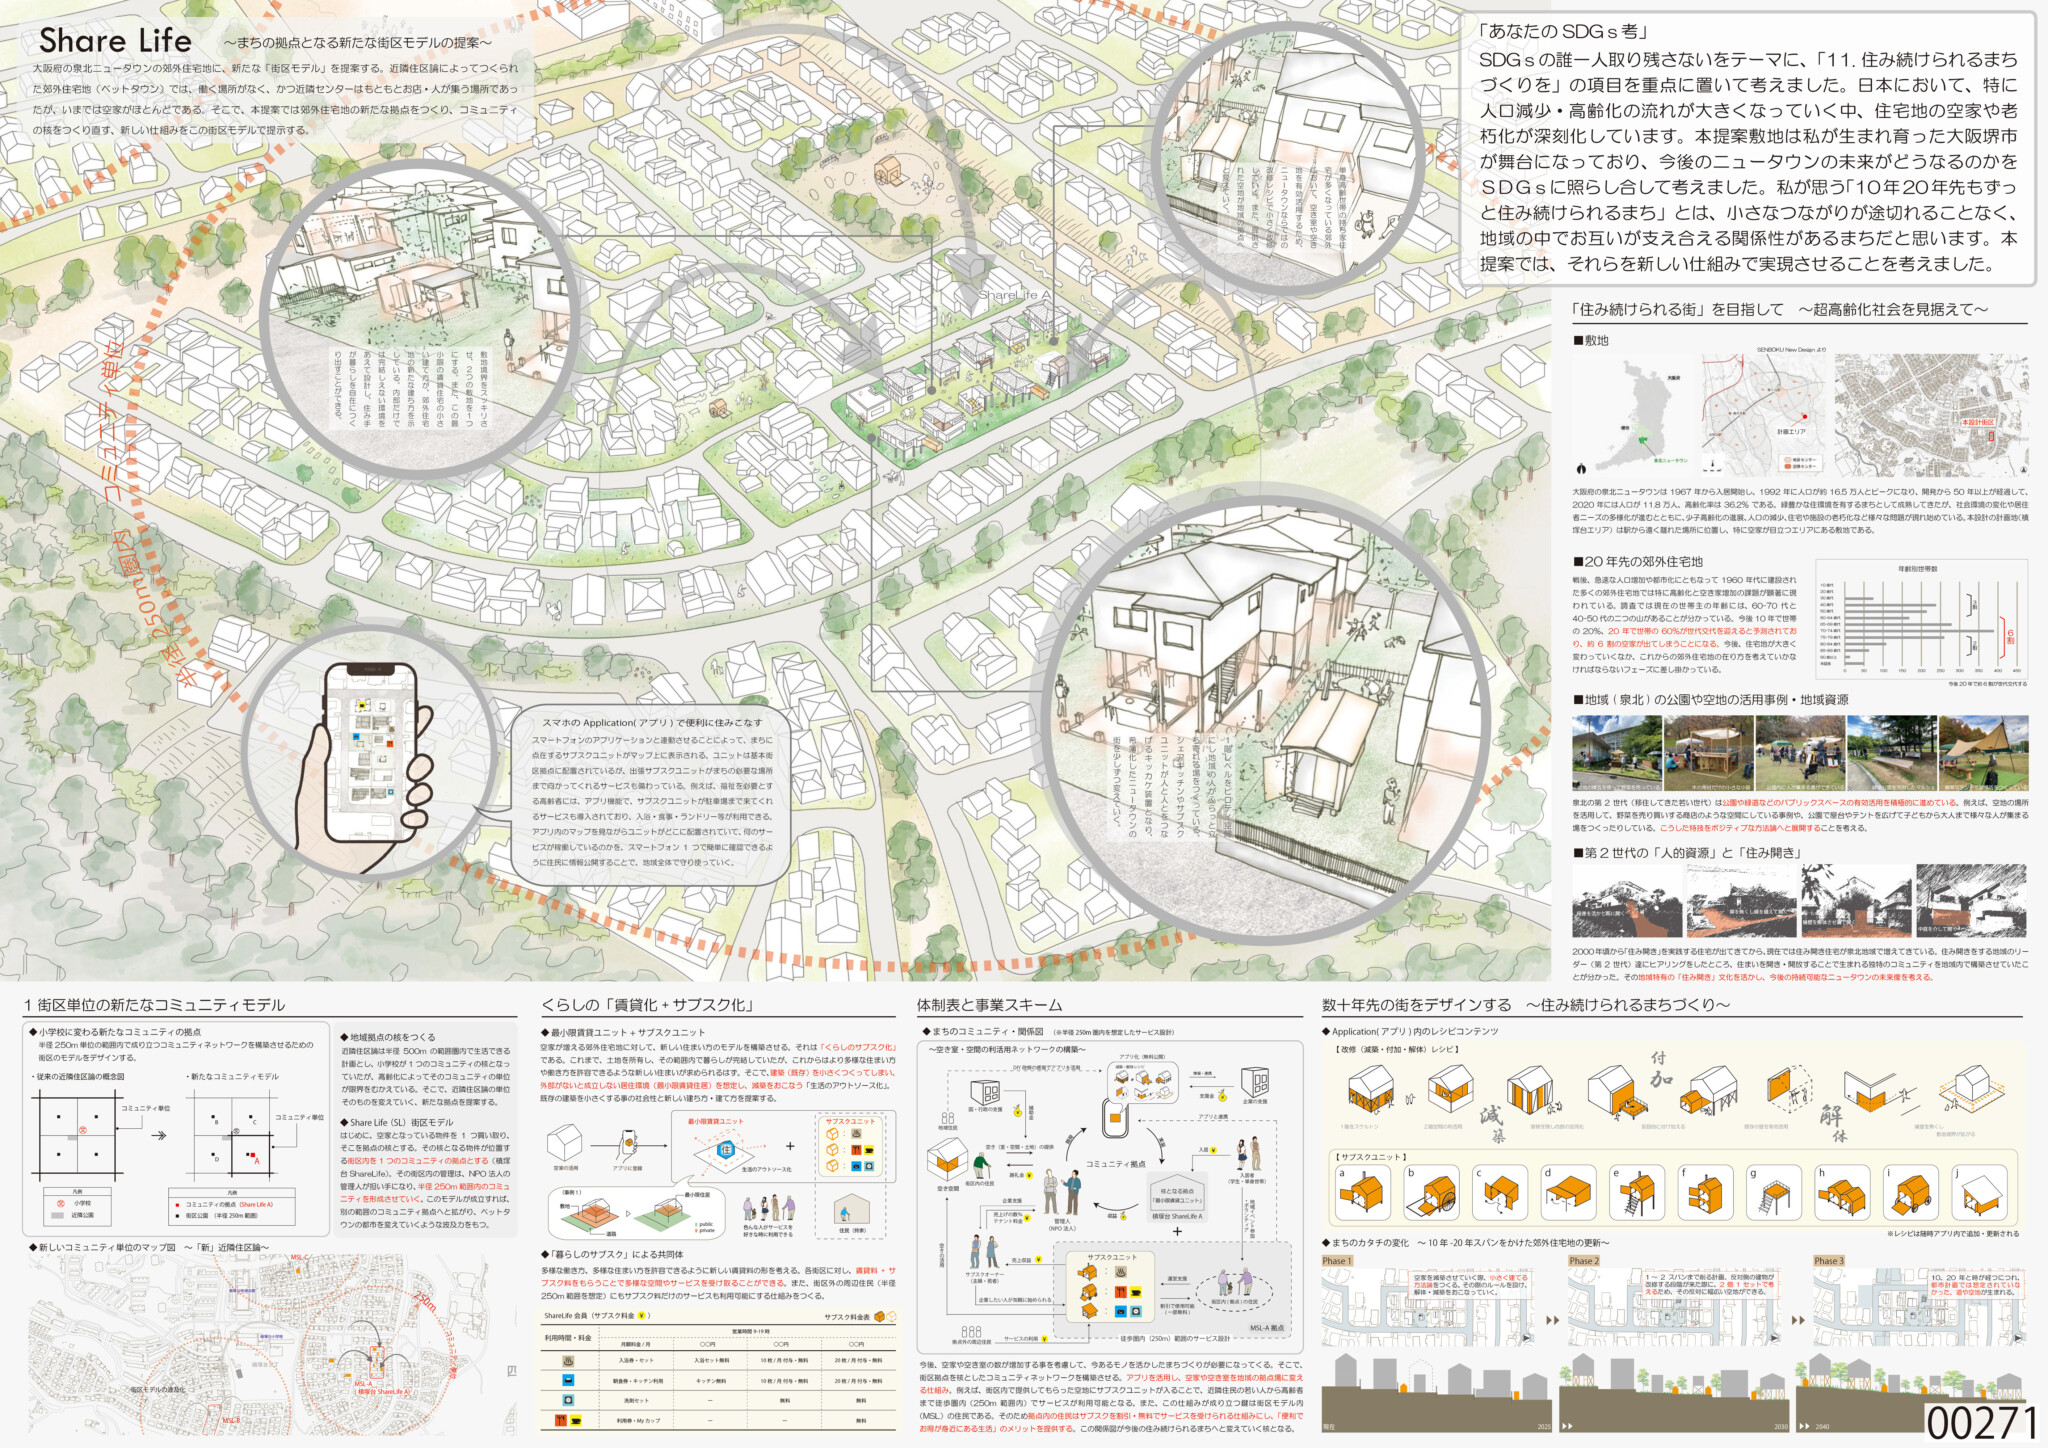 アイデア提案部門 (３位<br />渡部泰宗　雷姝菡（大阪市立大学大学院）<br />
「Share Life　～まちの拠点となる新たな街区モデルの提案～」)